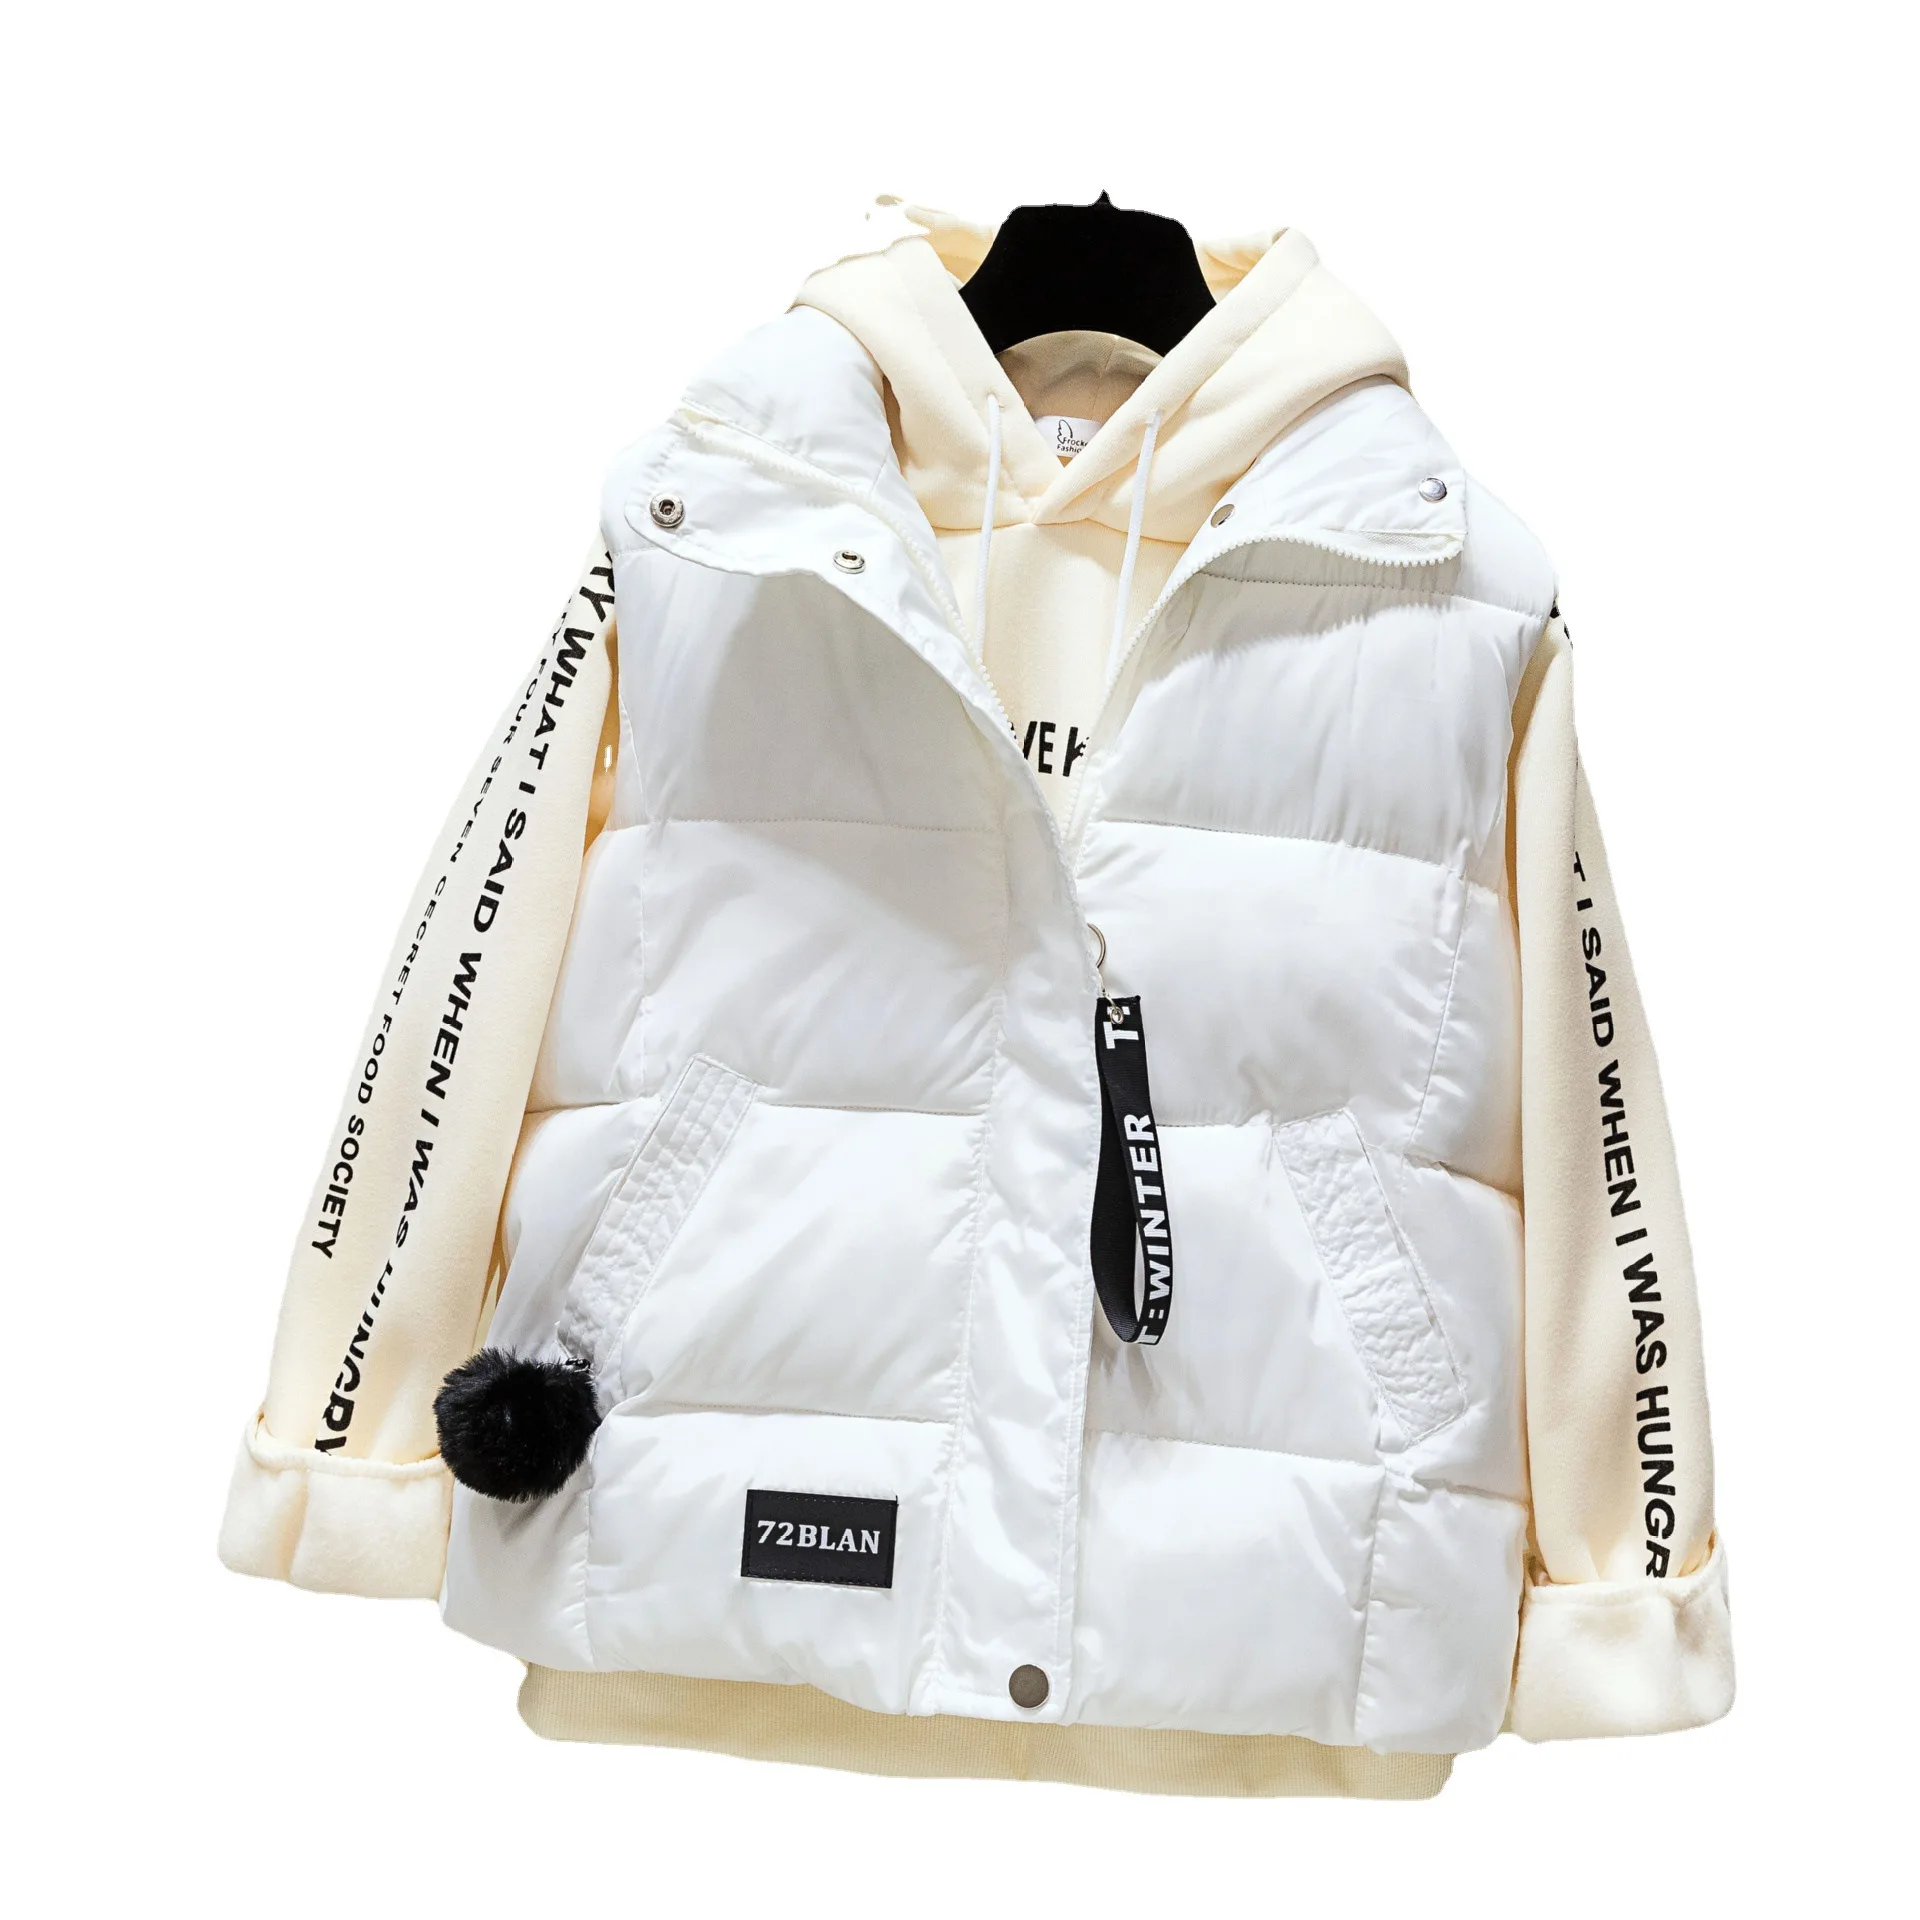 2022 סתיו וחורף נשים Veat קצר הז ' קט כותנה אפוד מוצק צבע המעיל 5 צבעים גודל S-XXXL - 2